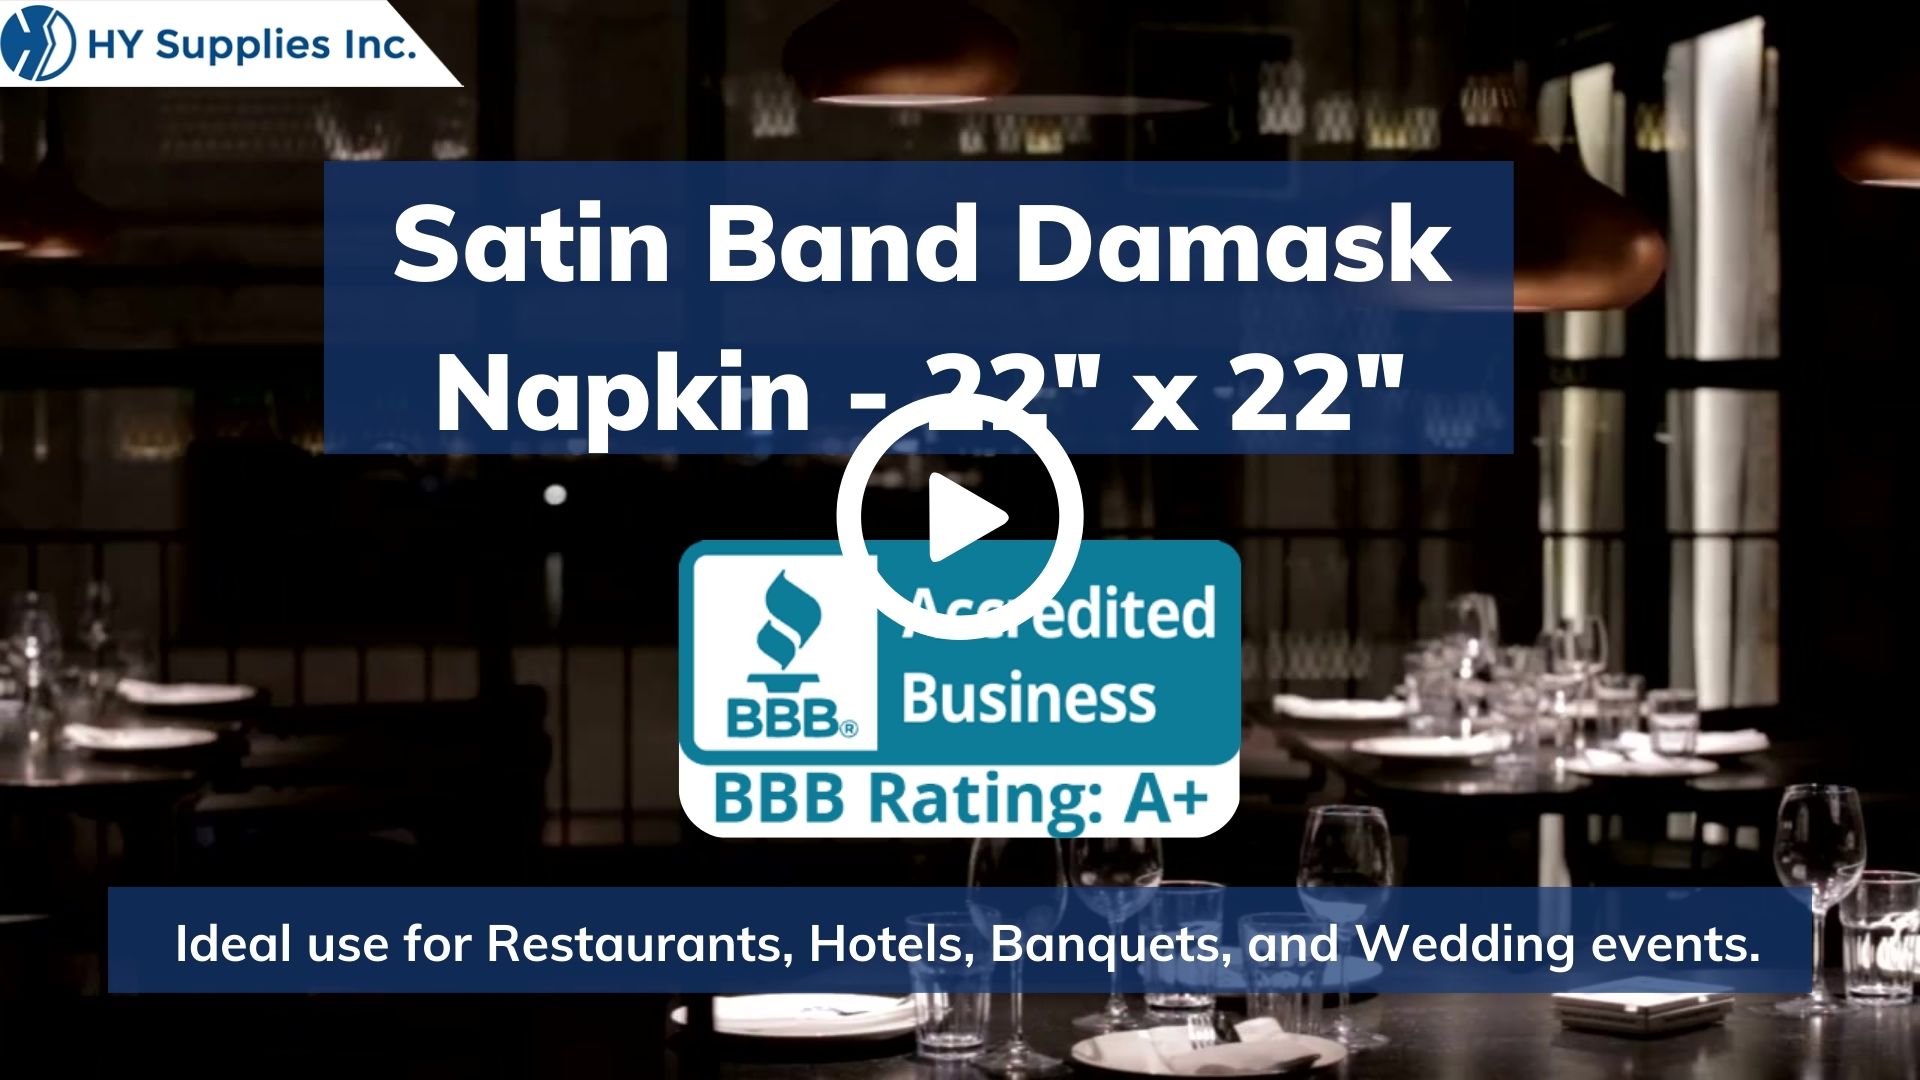 Satin Band Damask Napkin - 22"x 22"